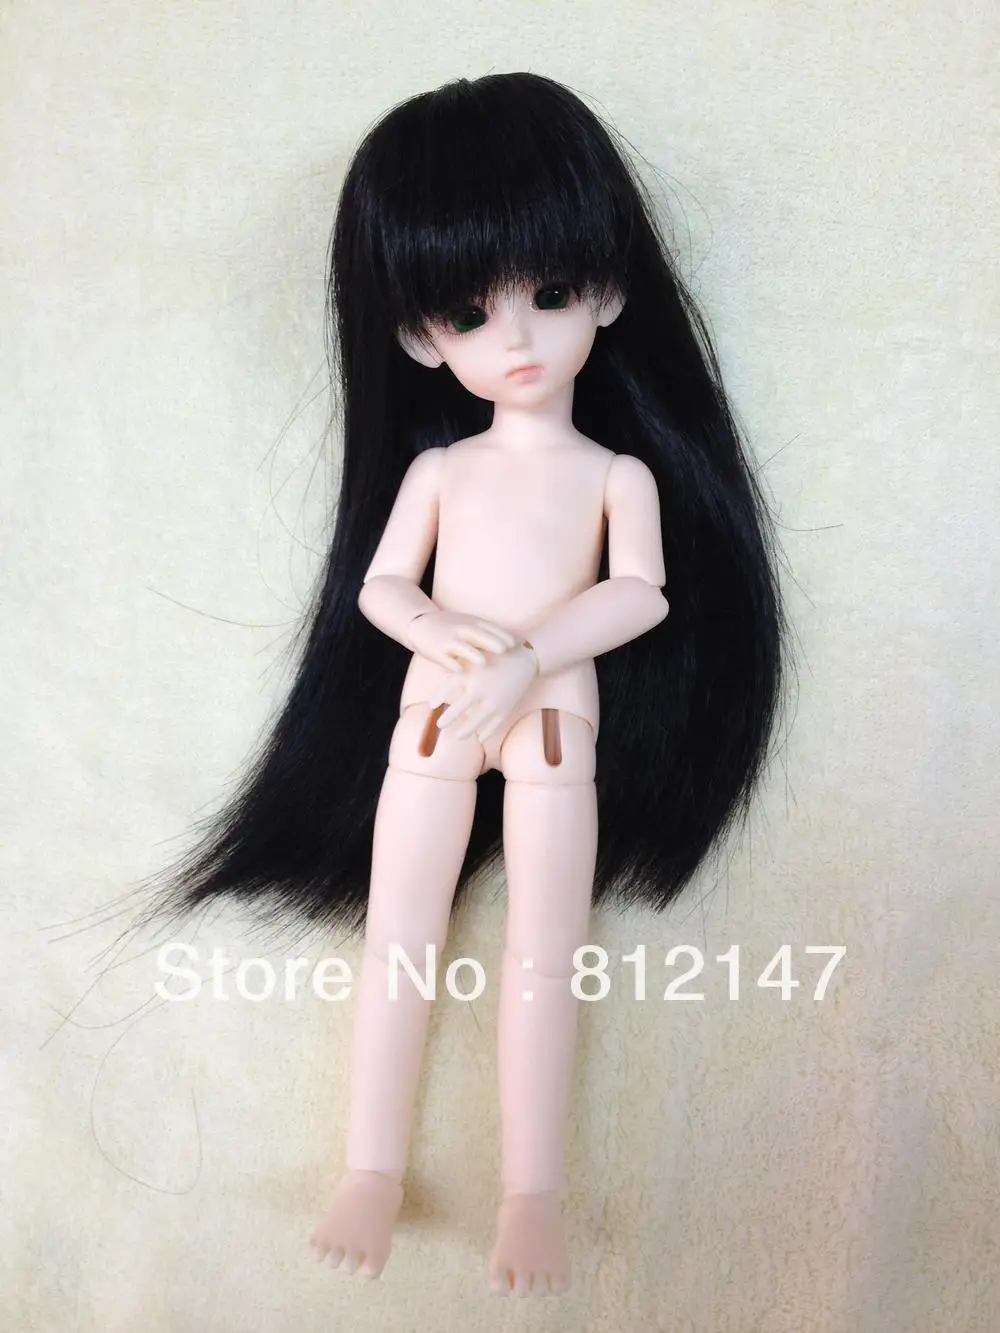 1/6(27 см) BJD куклы(включая макияж и глаза, черные волосы